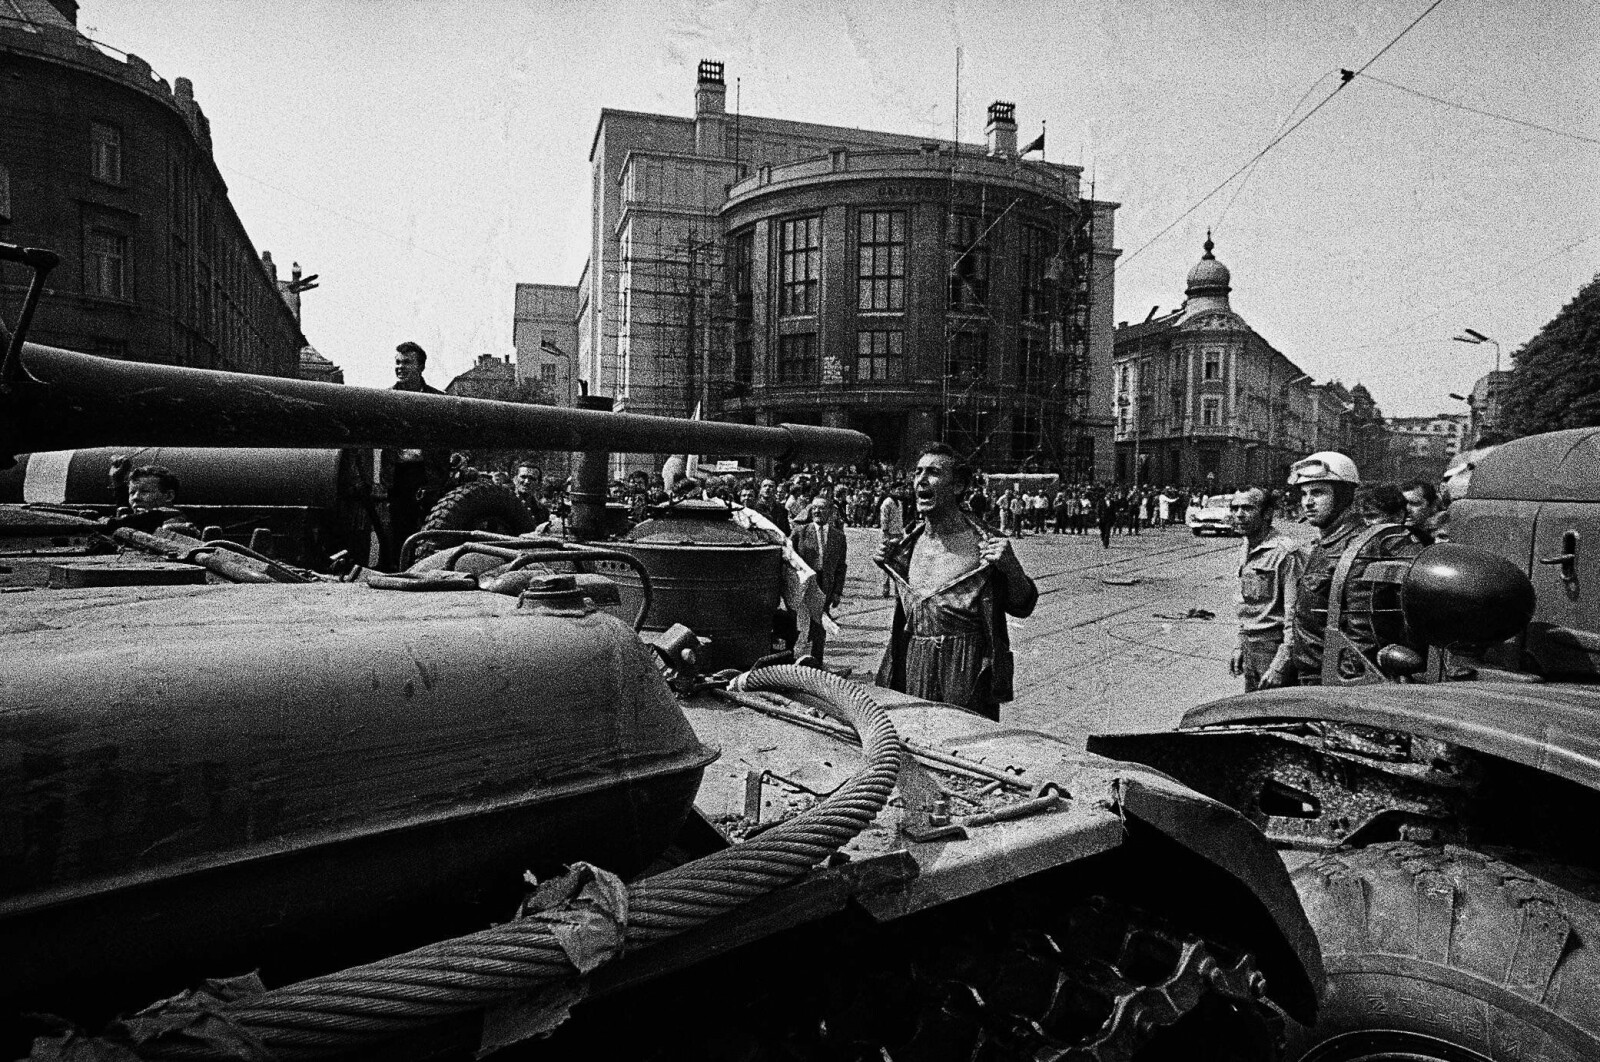 <b>1968:</b> Mannen og stridsvognen. Det ikoniske fotografiet fra 21. august 1968.